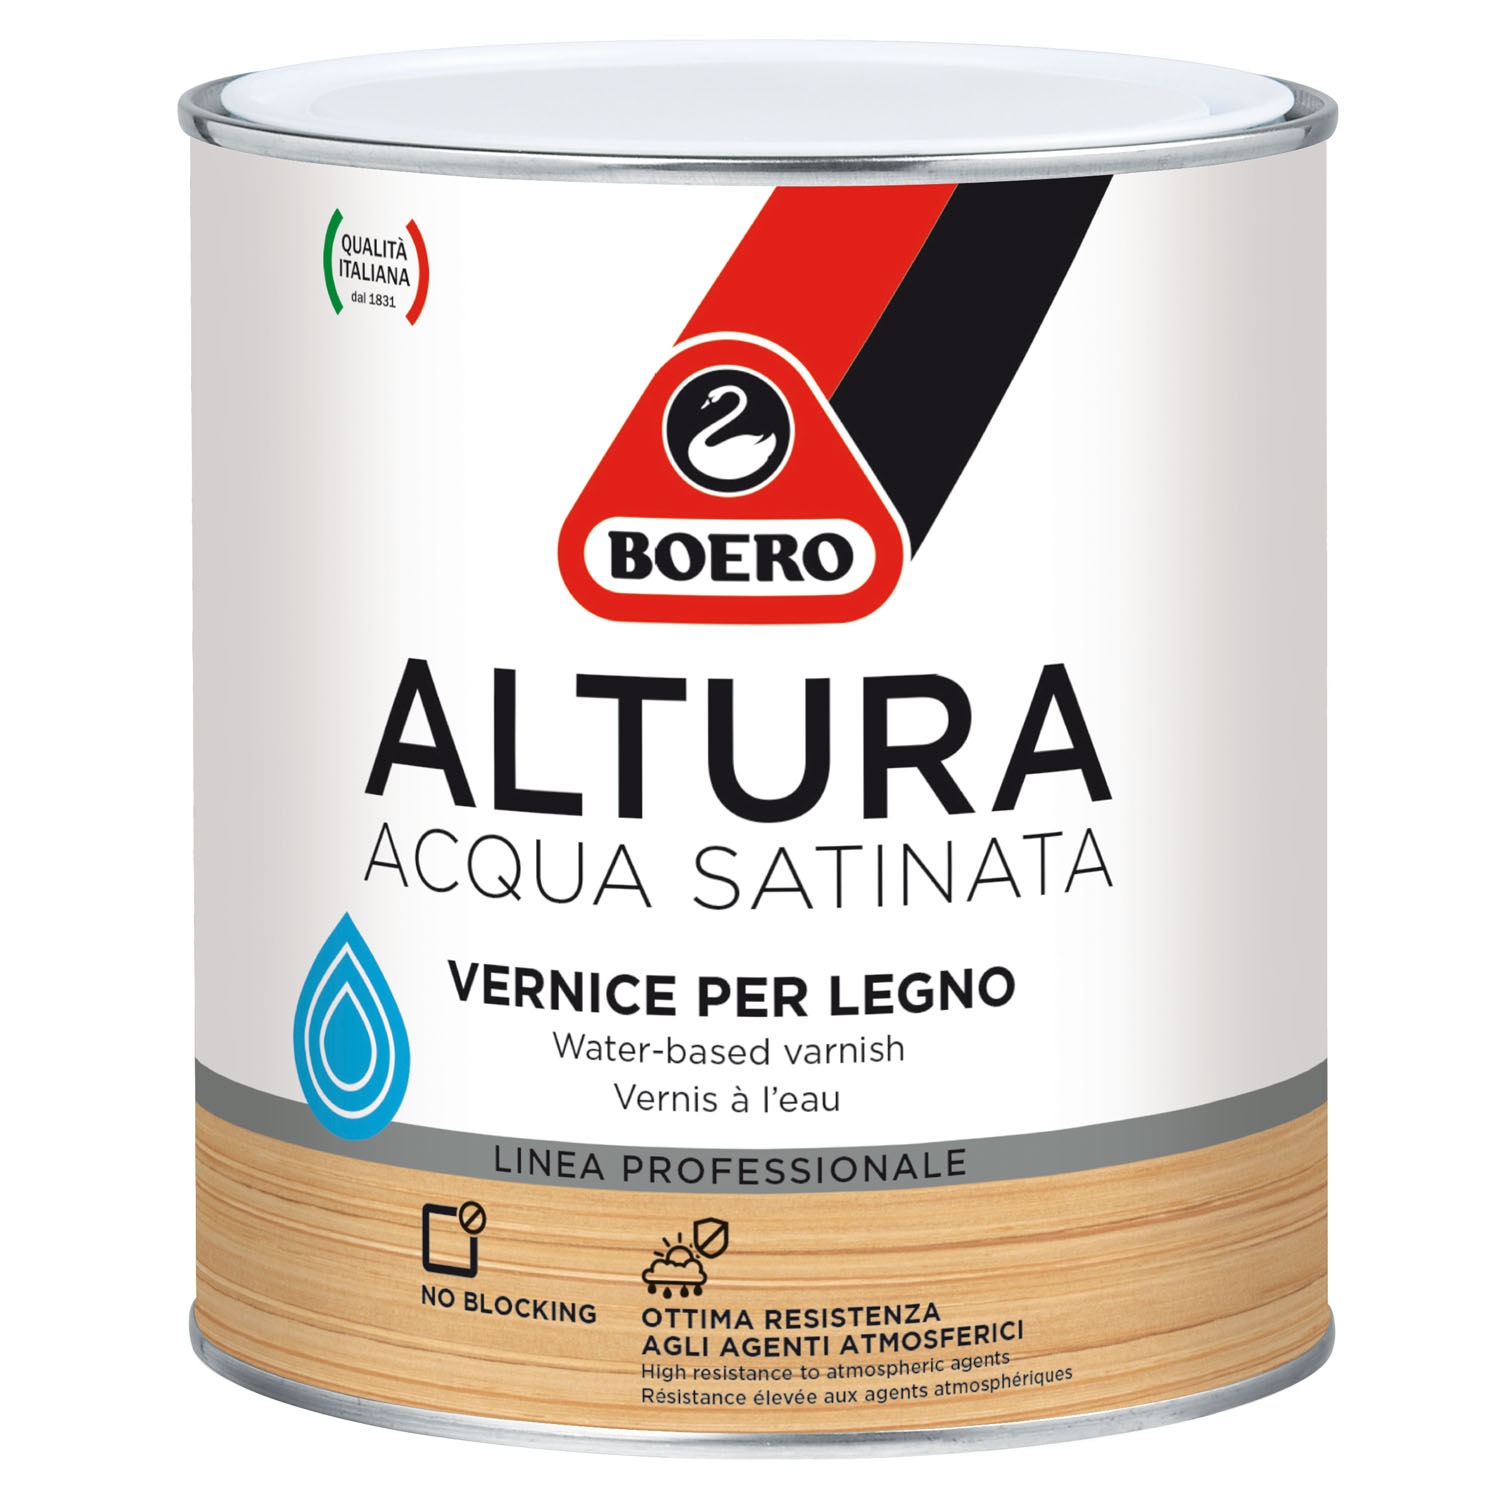 https://www.boero.it/wp-content/uploads/2021/12/vernice-per-legno-all-acqua-satinata-altura-satinata-boero.jpg